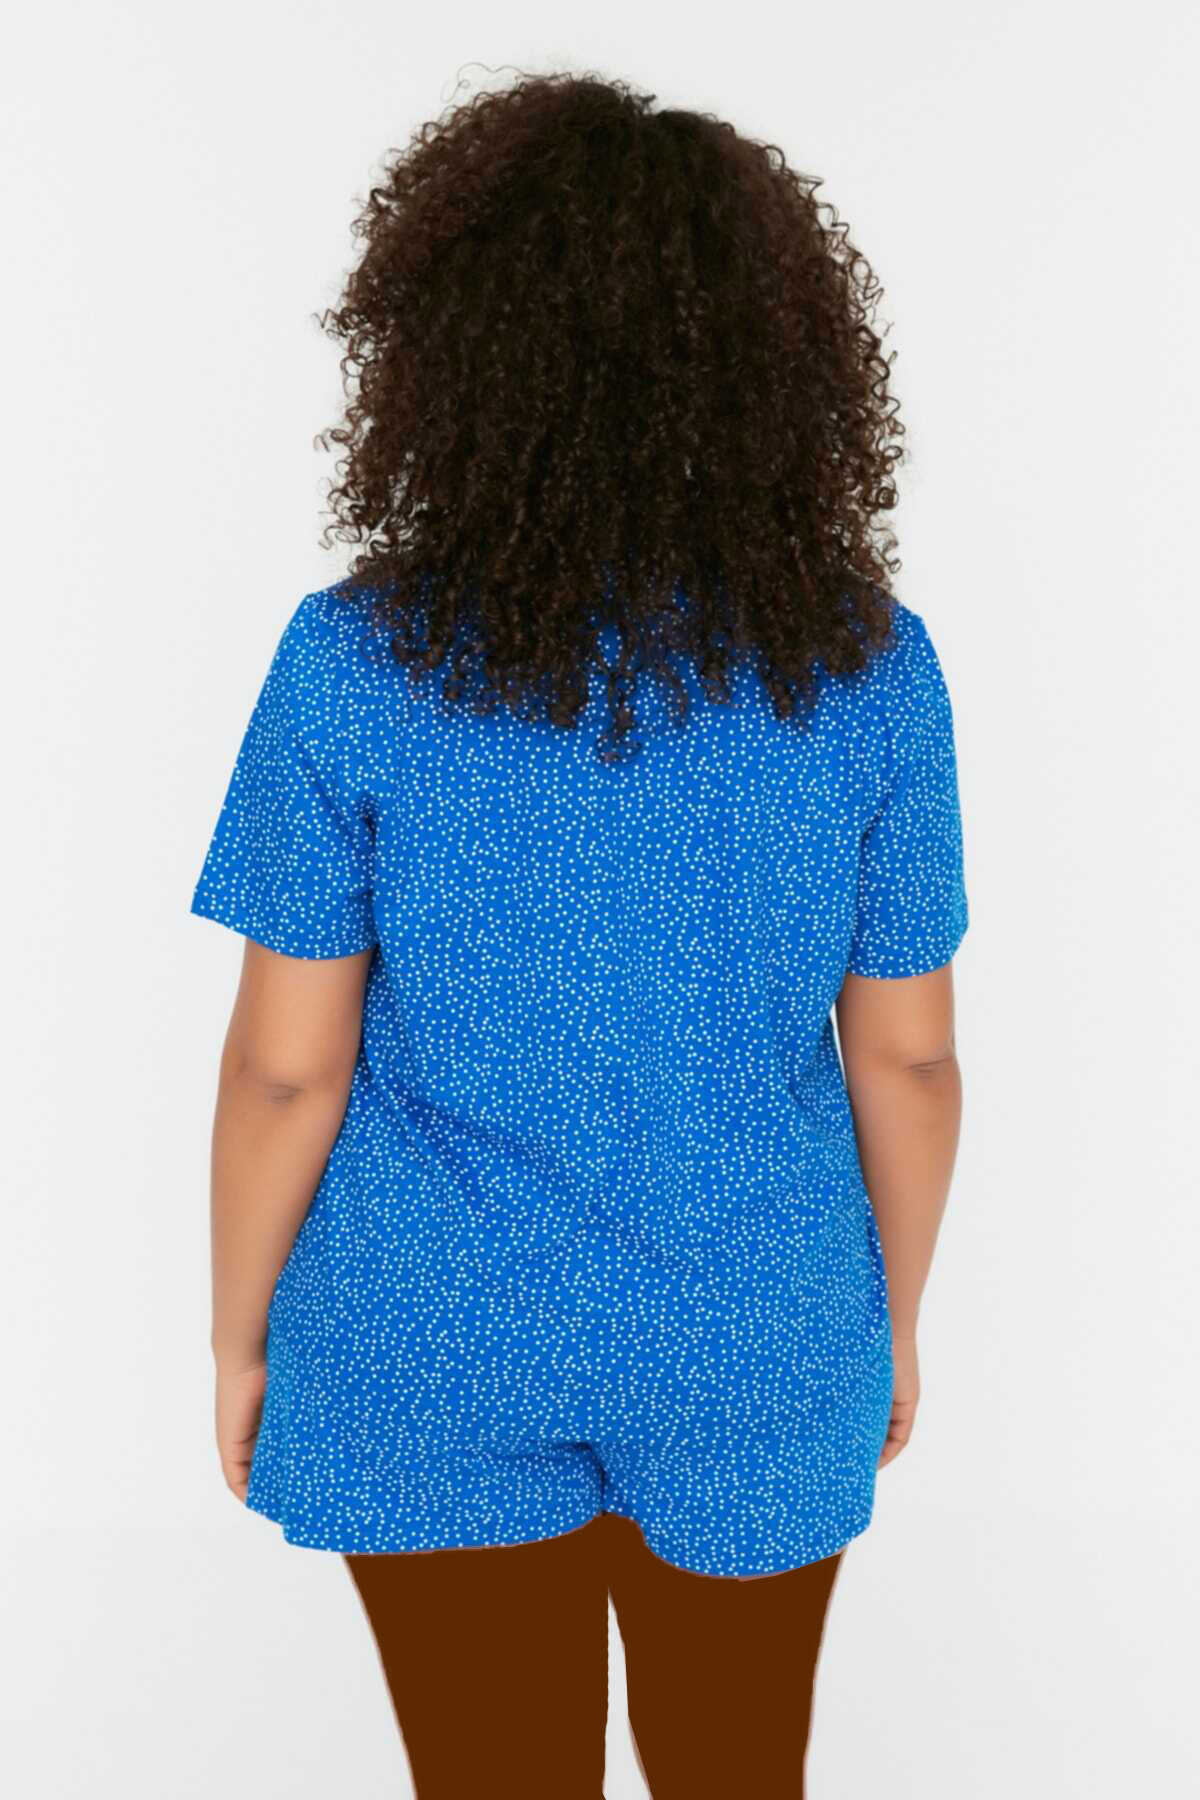 ست پیژامه بلوز شلوارک زنانه چاپ دار دکمه ای سایز بزرگ آبی برند Trendyol Curve